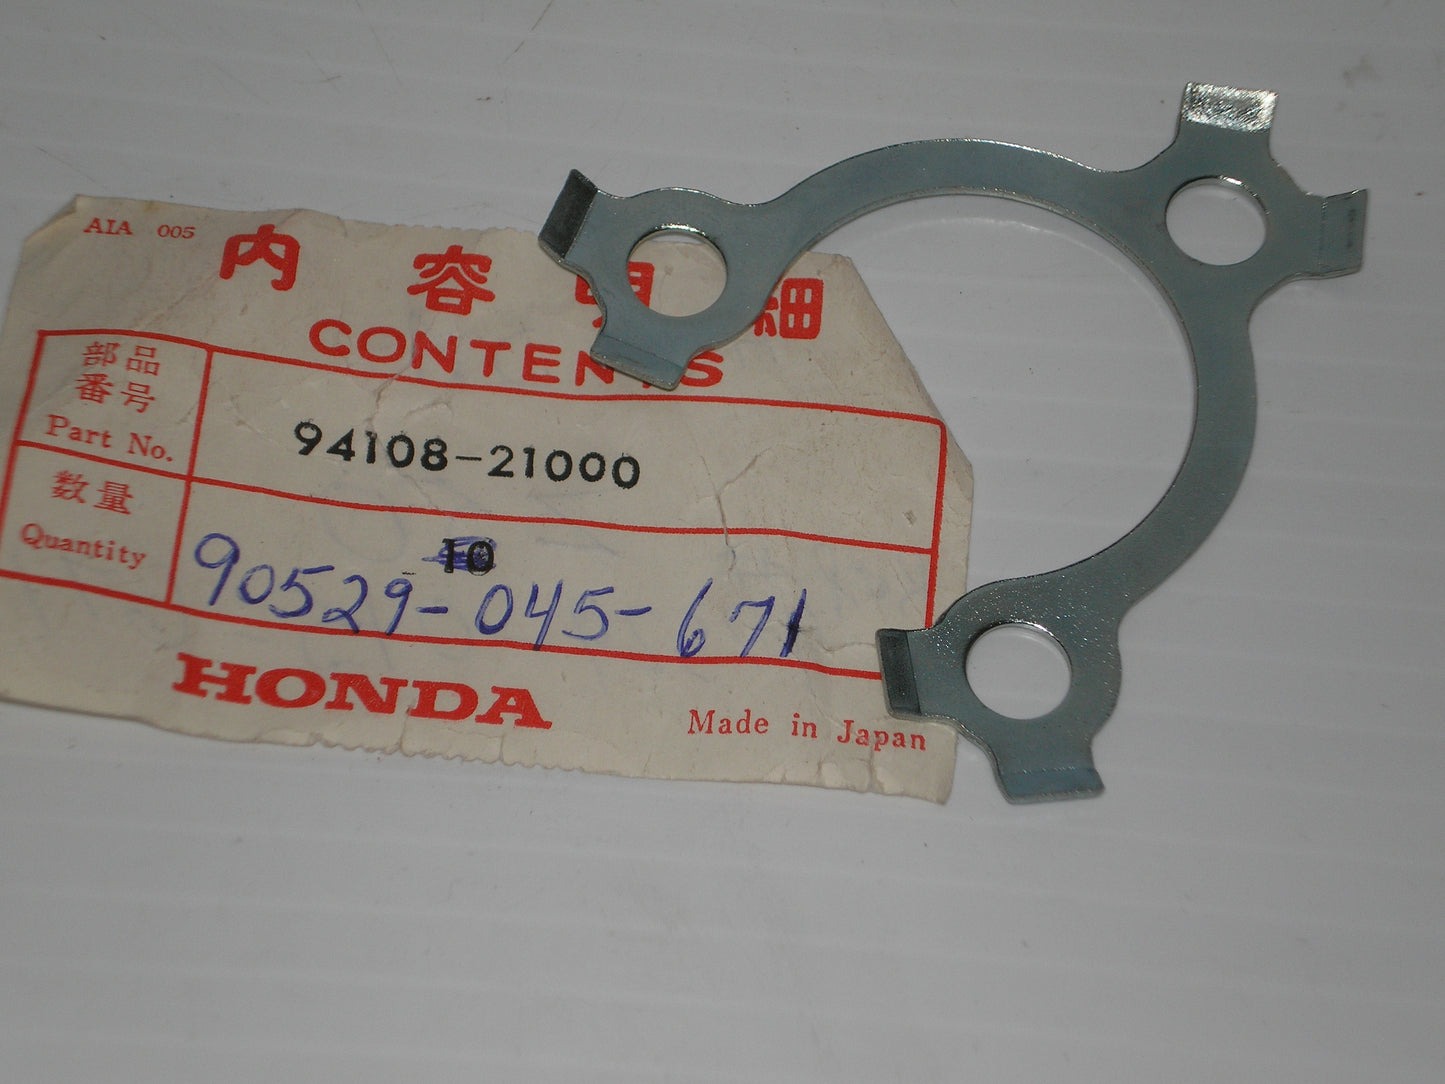 HONDA QA50 Z50 Tongued Sprocket Lock Washer 94108-21000 / 90529-045-671